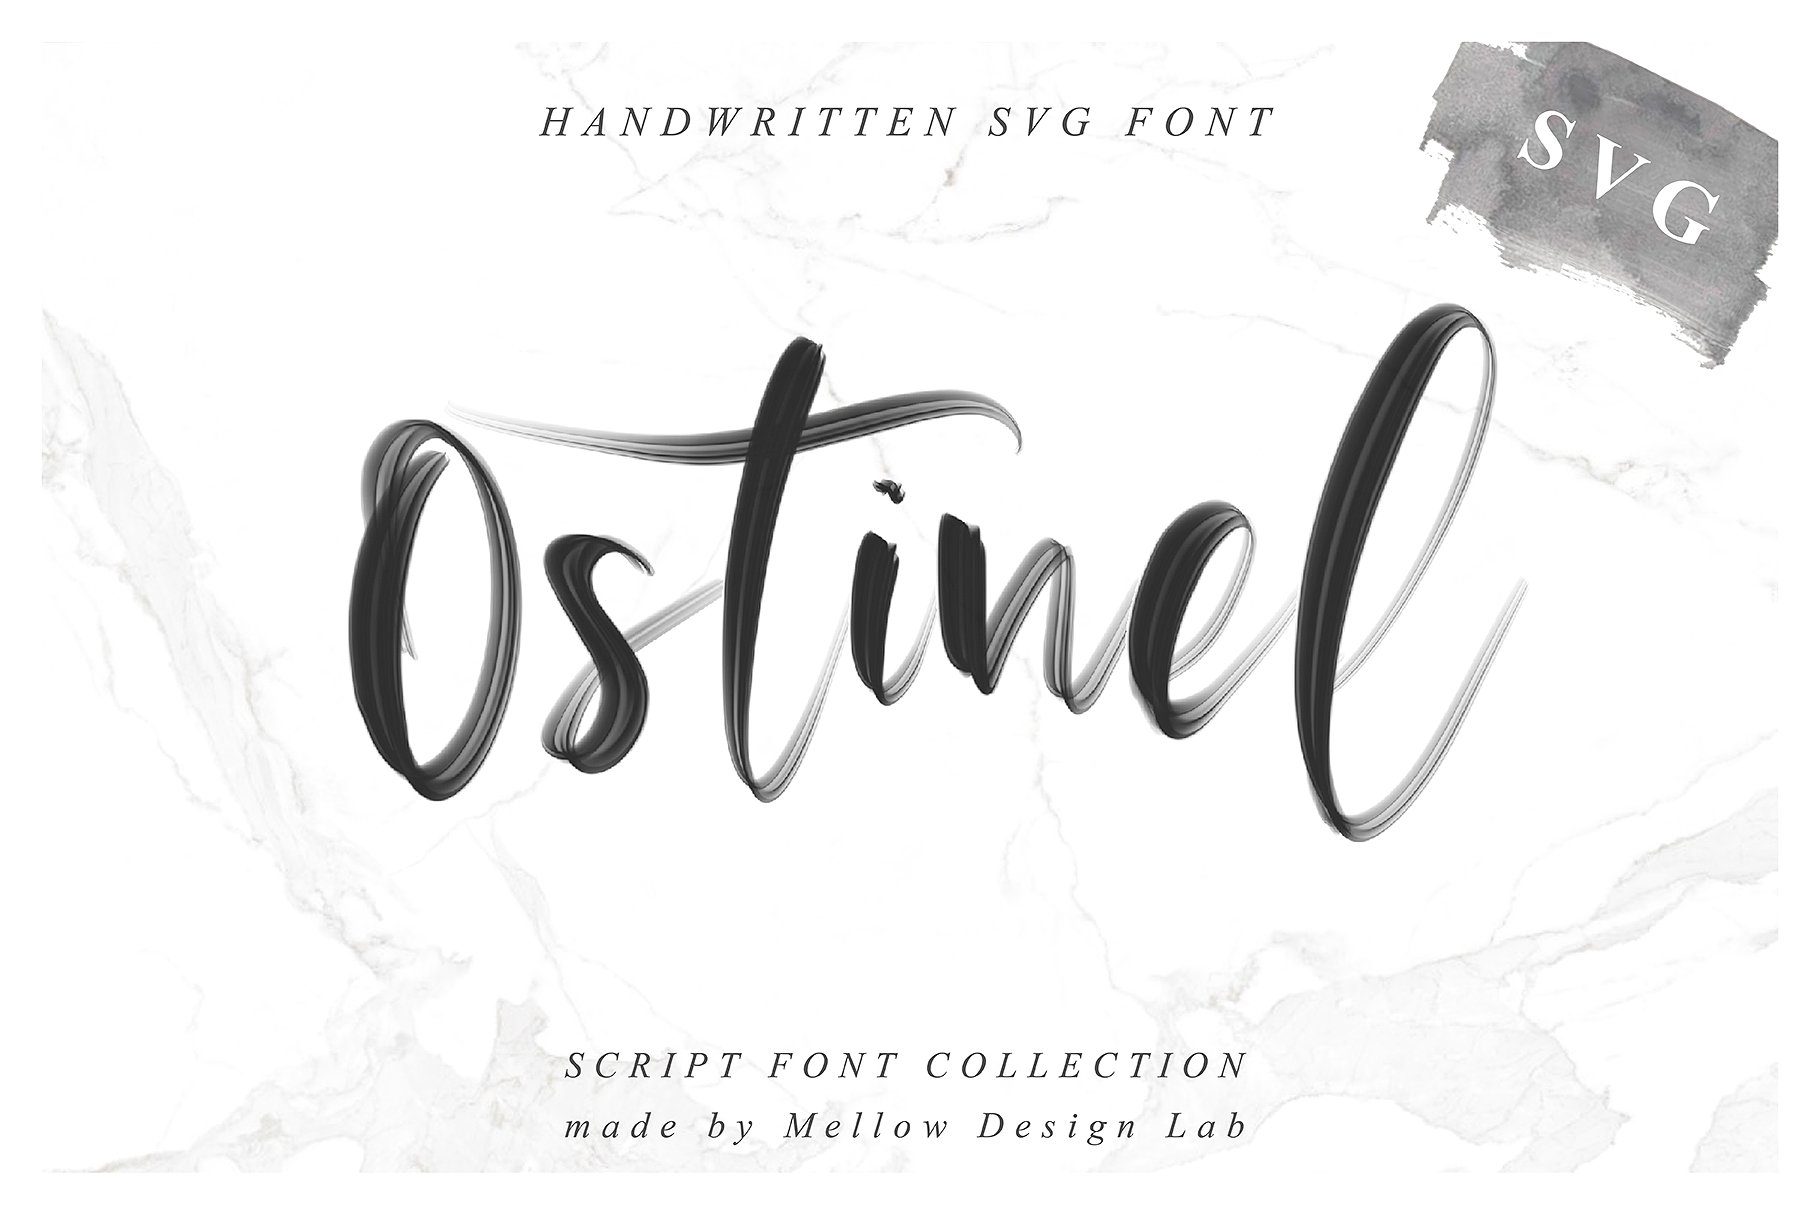 行云流水英文书法SVG画笔字体 Ostinel SVG Script Font插图(9)